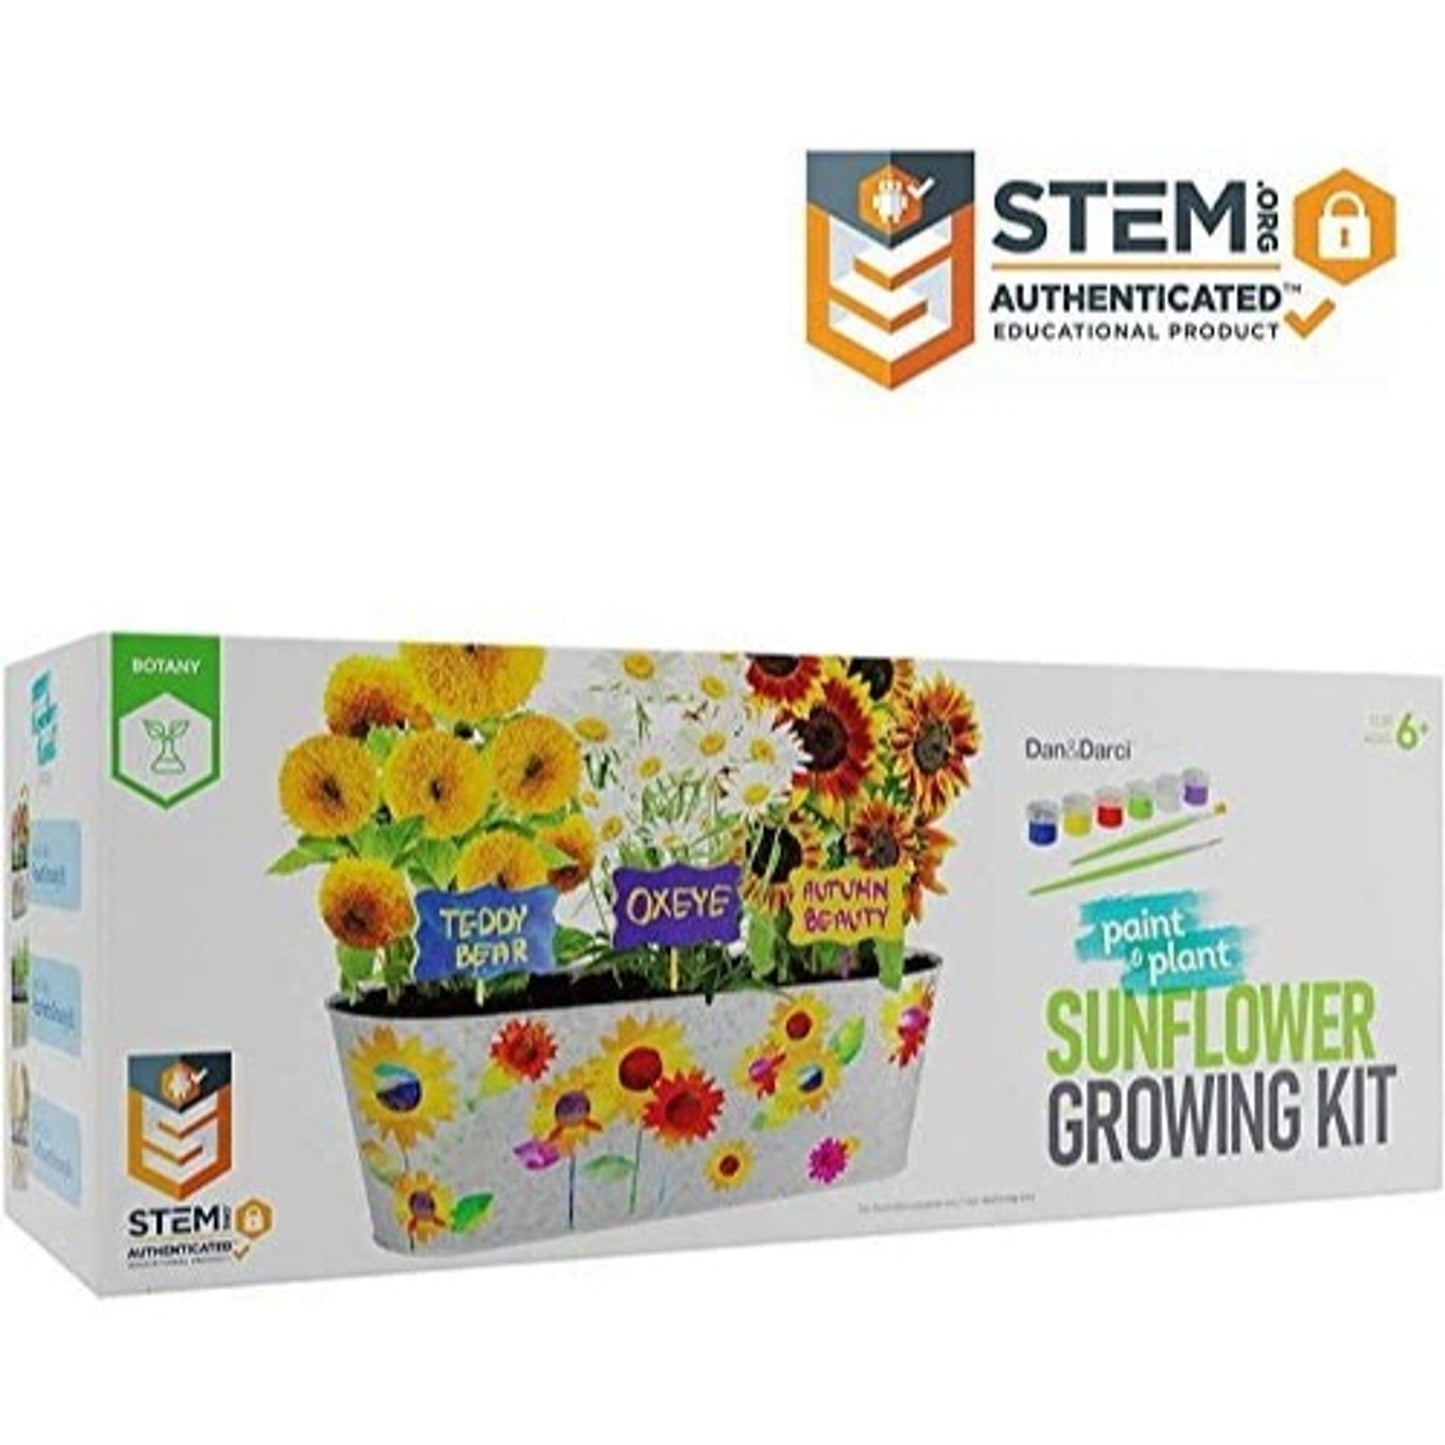 Paint & Plant Sunflower Growing Kit